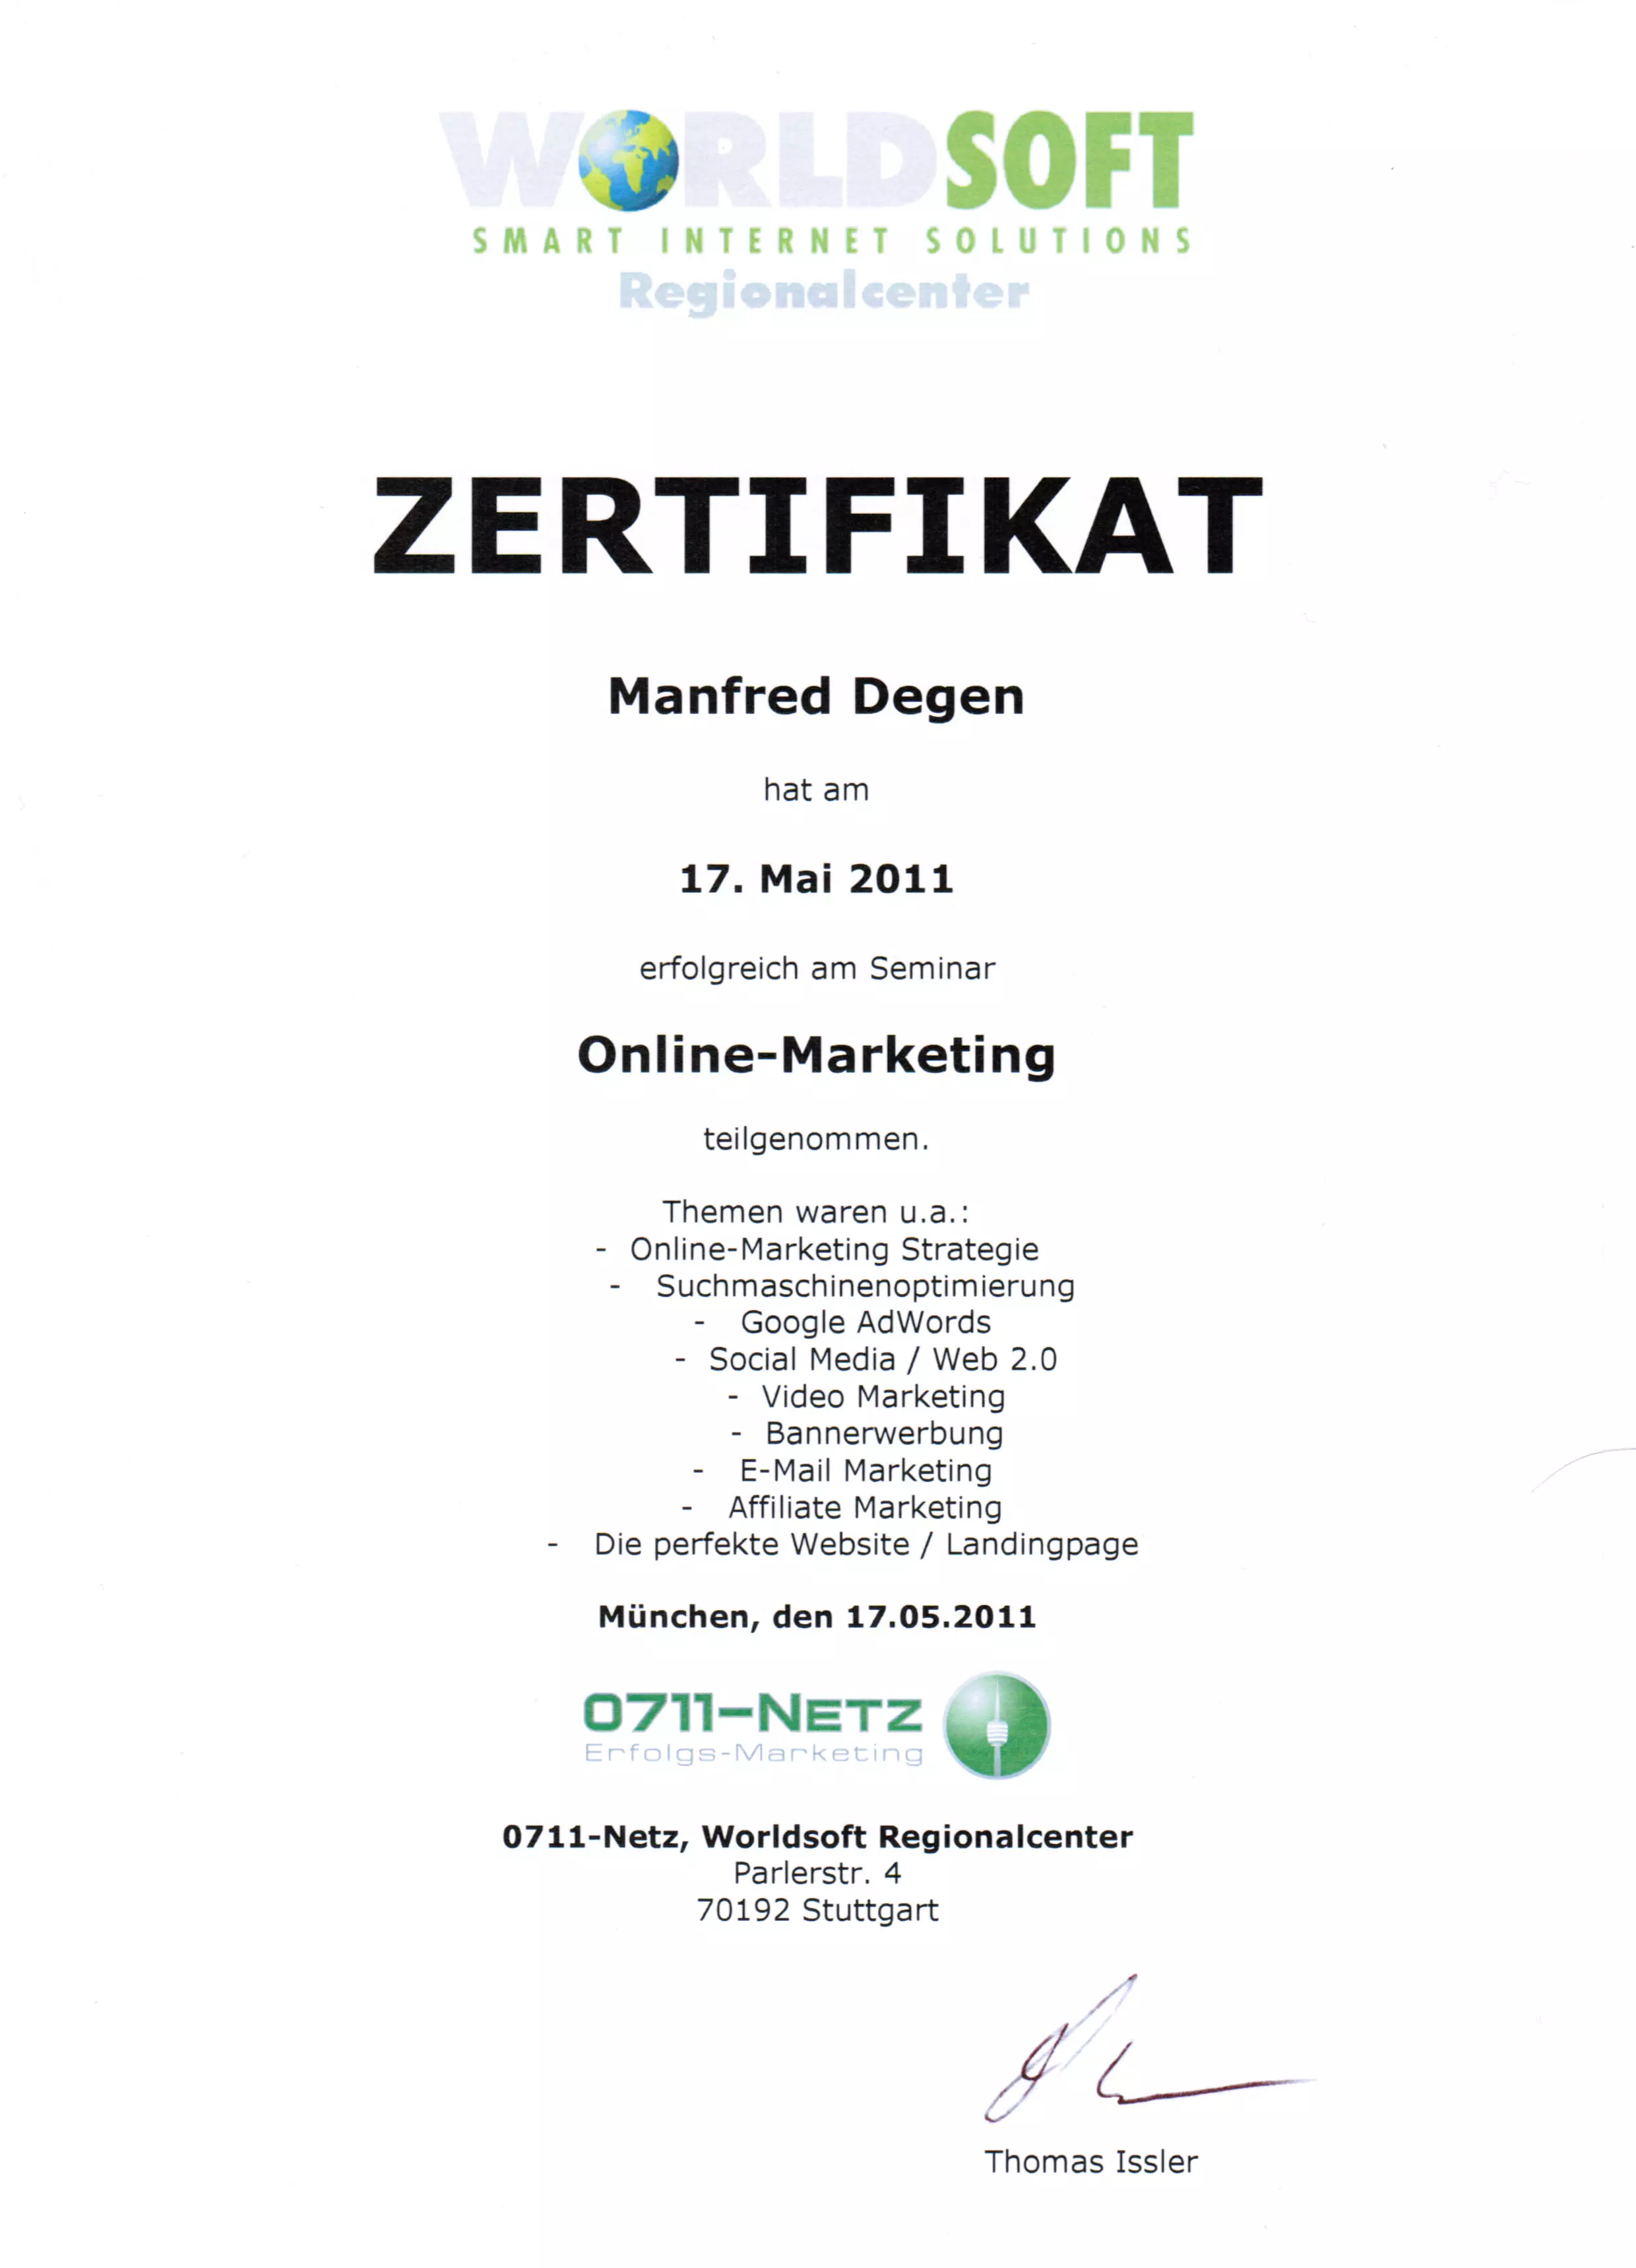 Zertifikat - Online-Marketing Manfred Degen